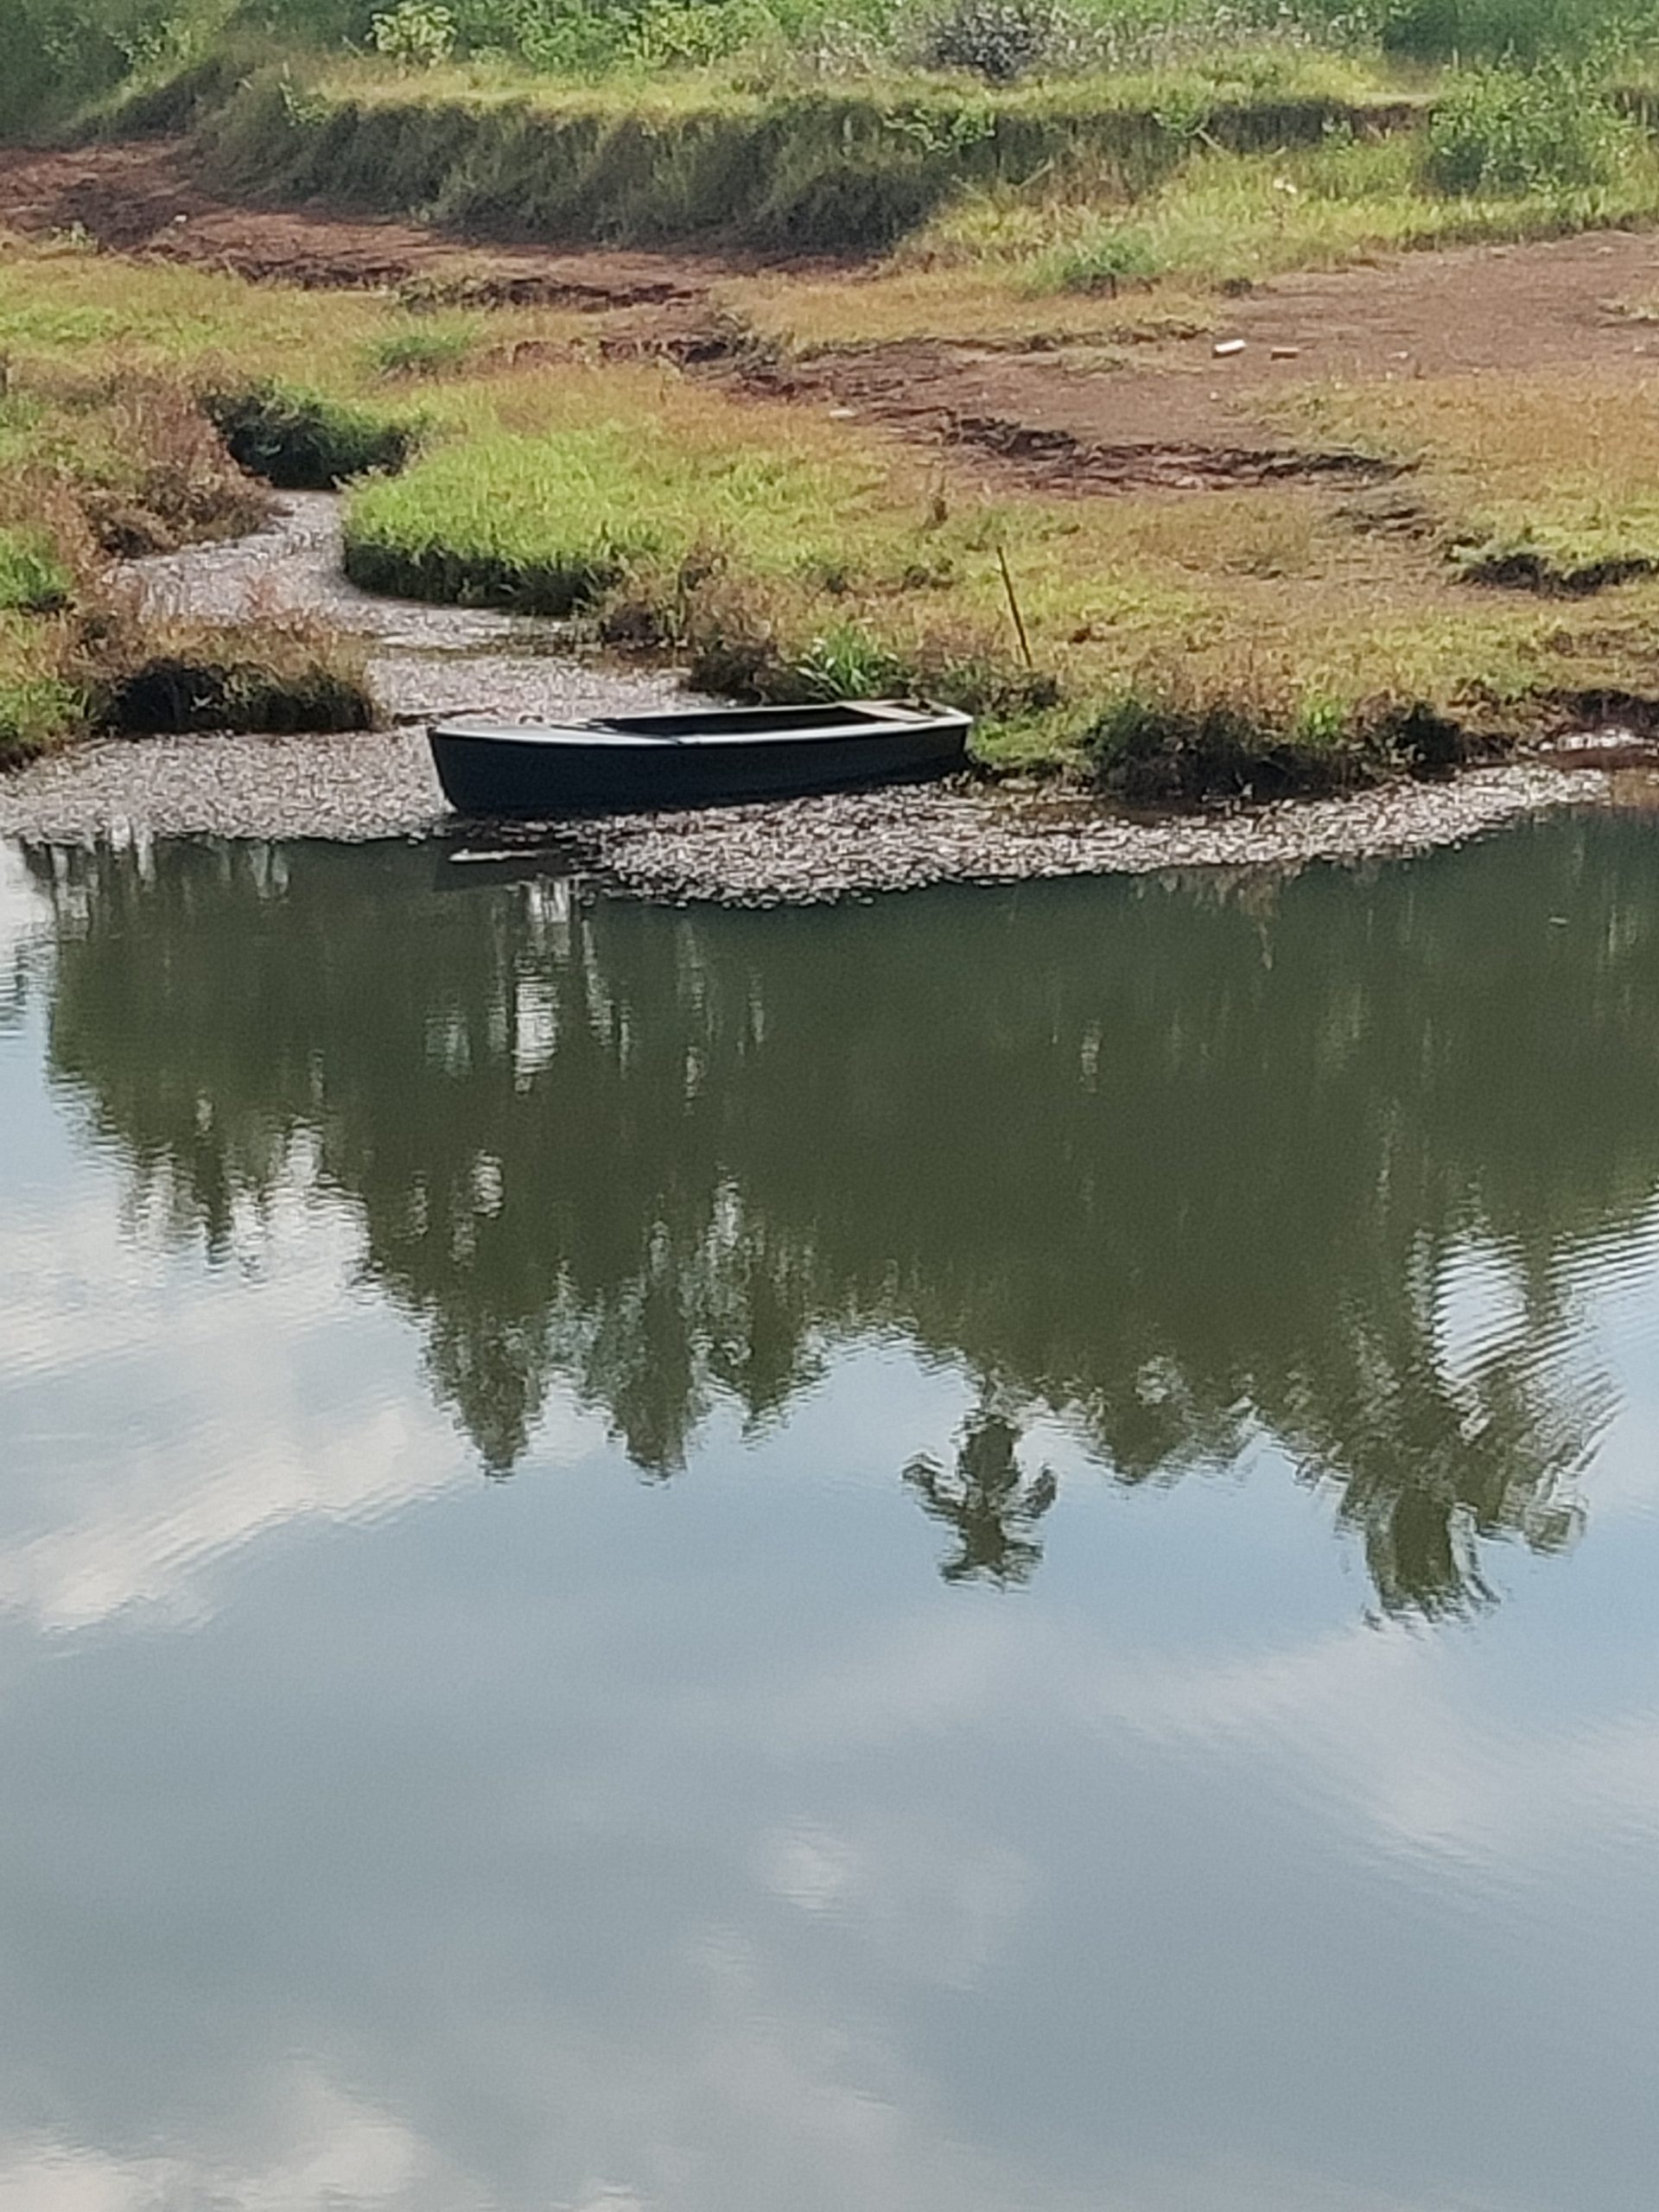 Boat in river